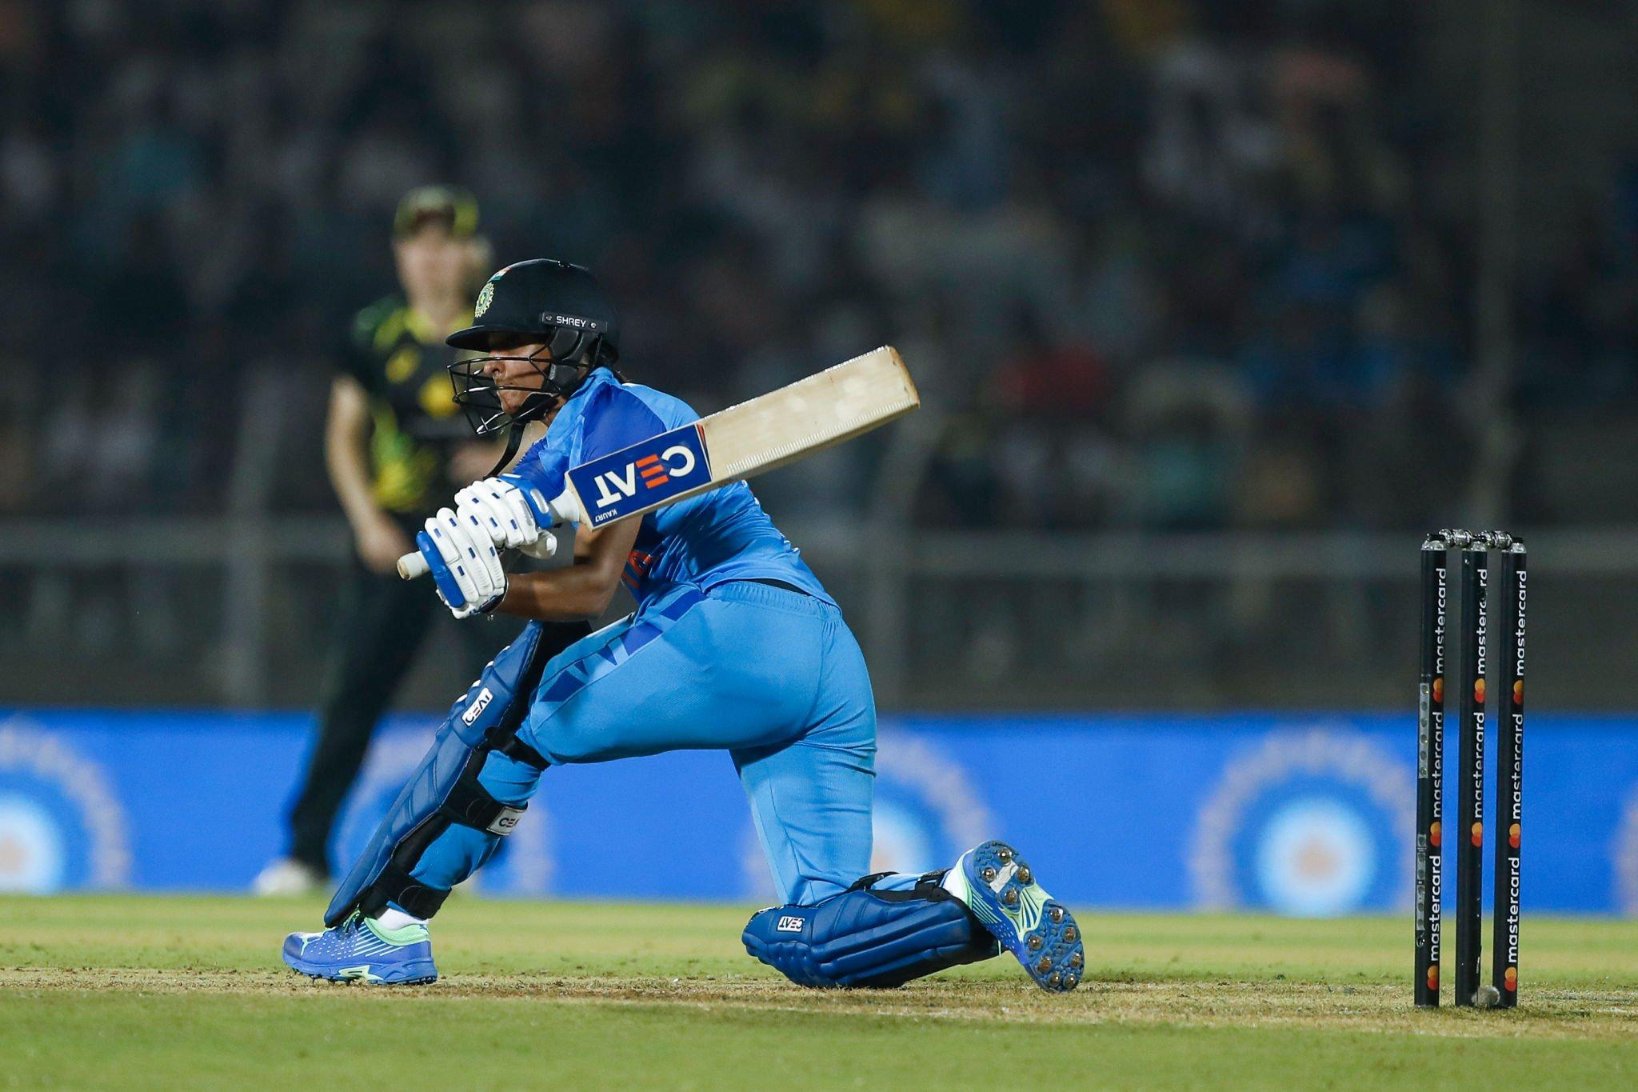 दक्षिण अफ्रीका के खिलाफ हार के बावजूद भारतीय टीम के प्रदर्शन से खुश हैं कप्तान हरमनप्रीत कौर